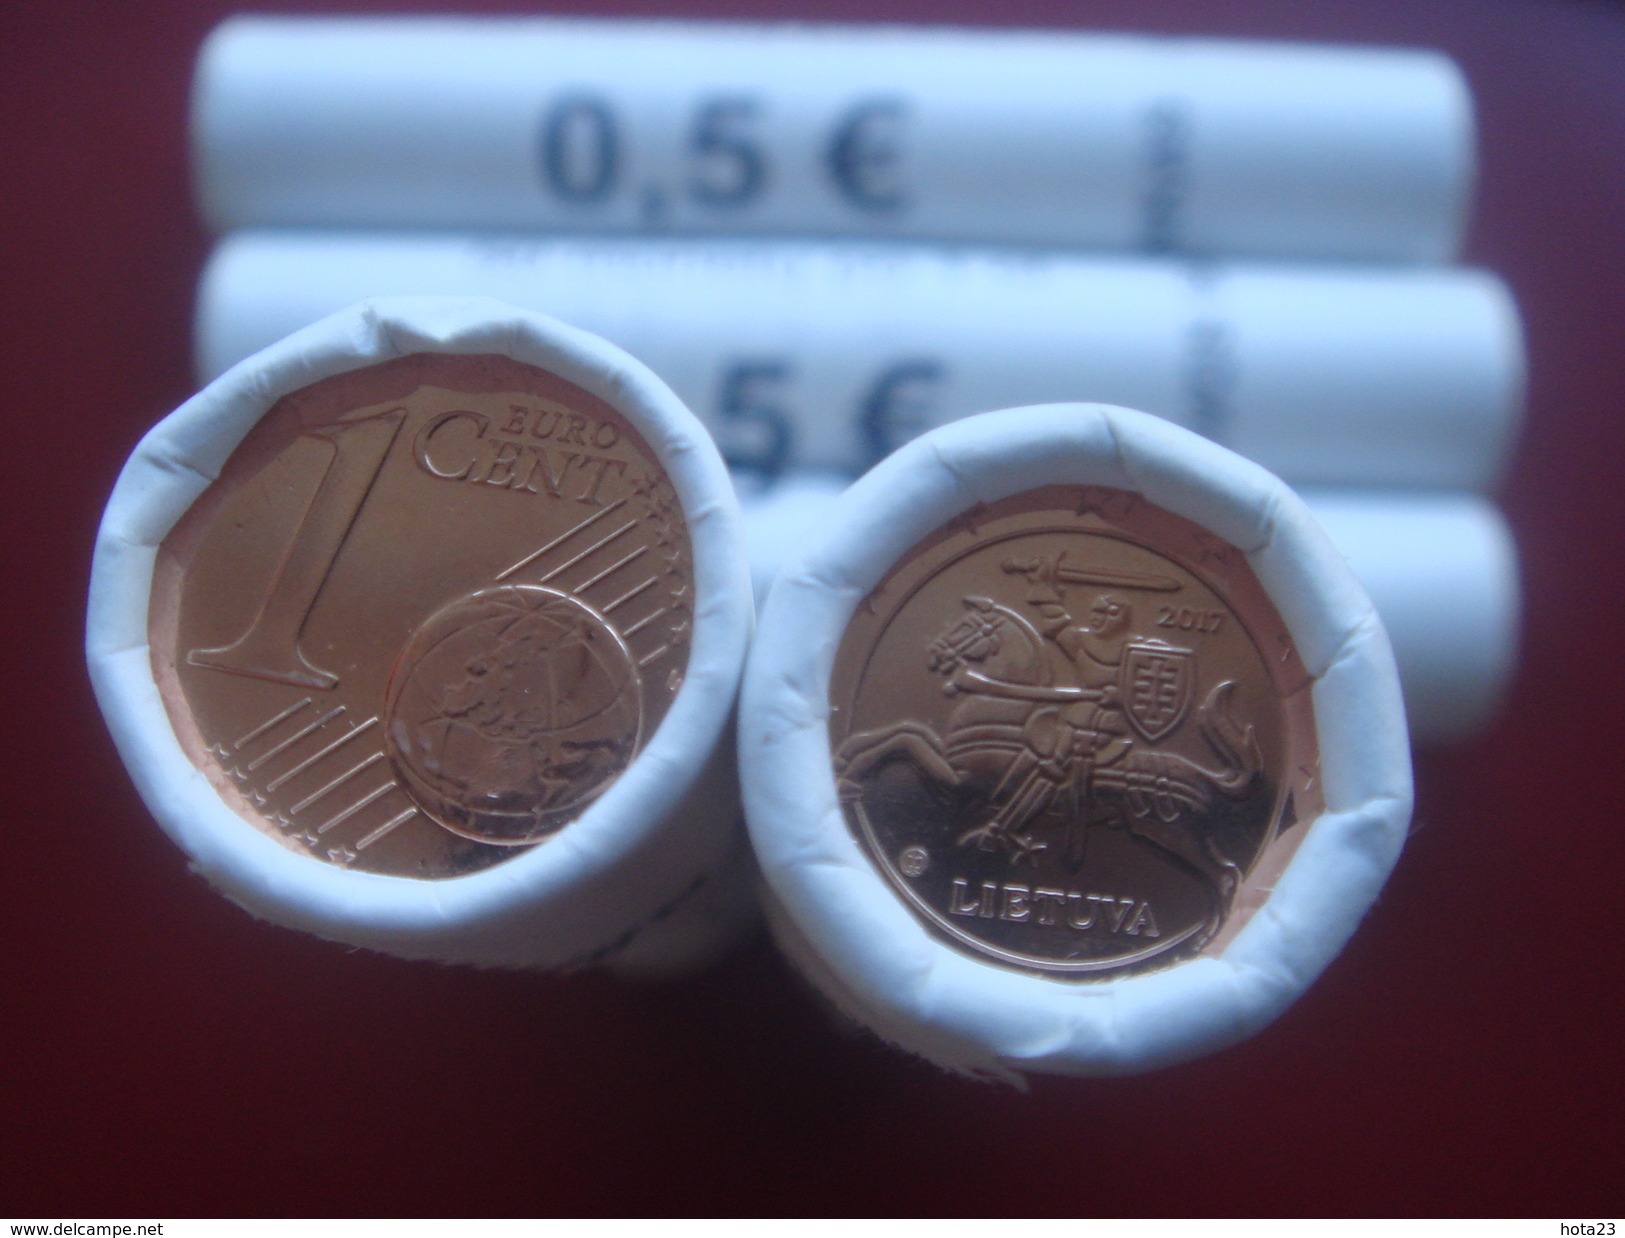 Neu Lithuania Litauen Lietuva  1 Euro Cent 2017  Münzen 1 Roll  UNC  50 COINS - Rollen